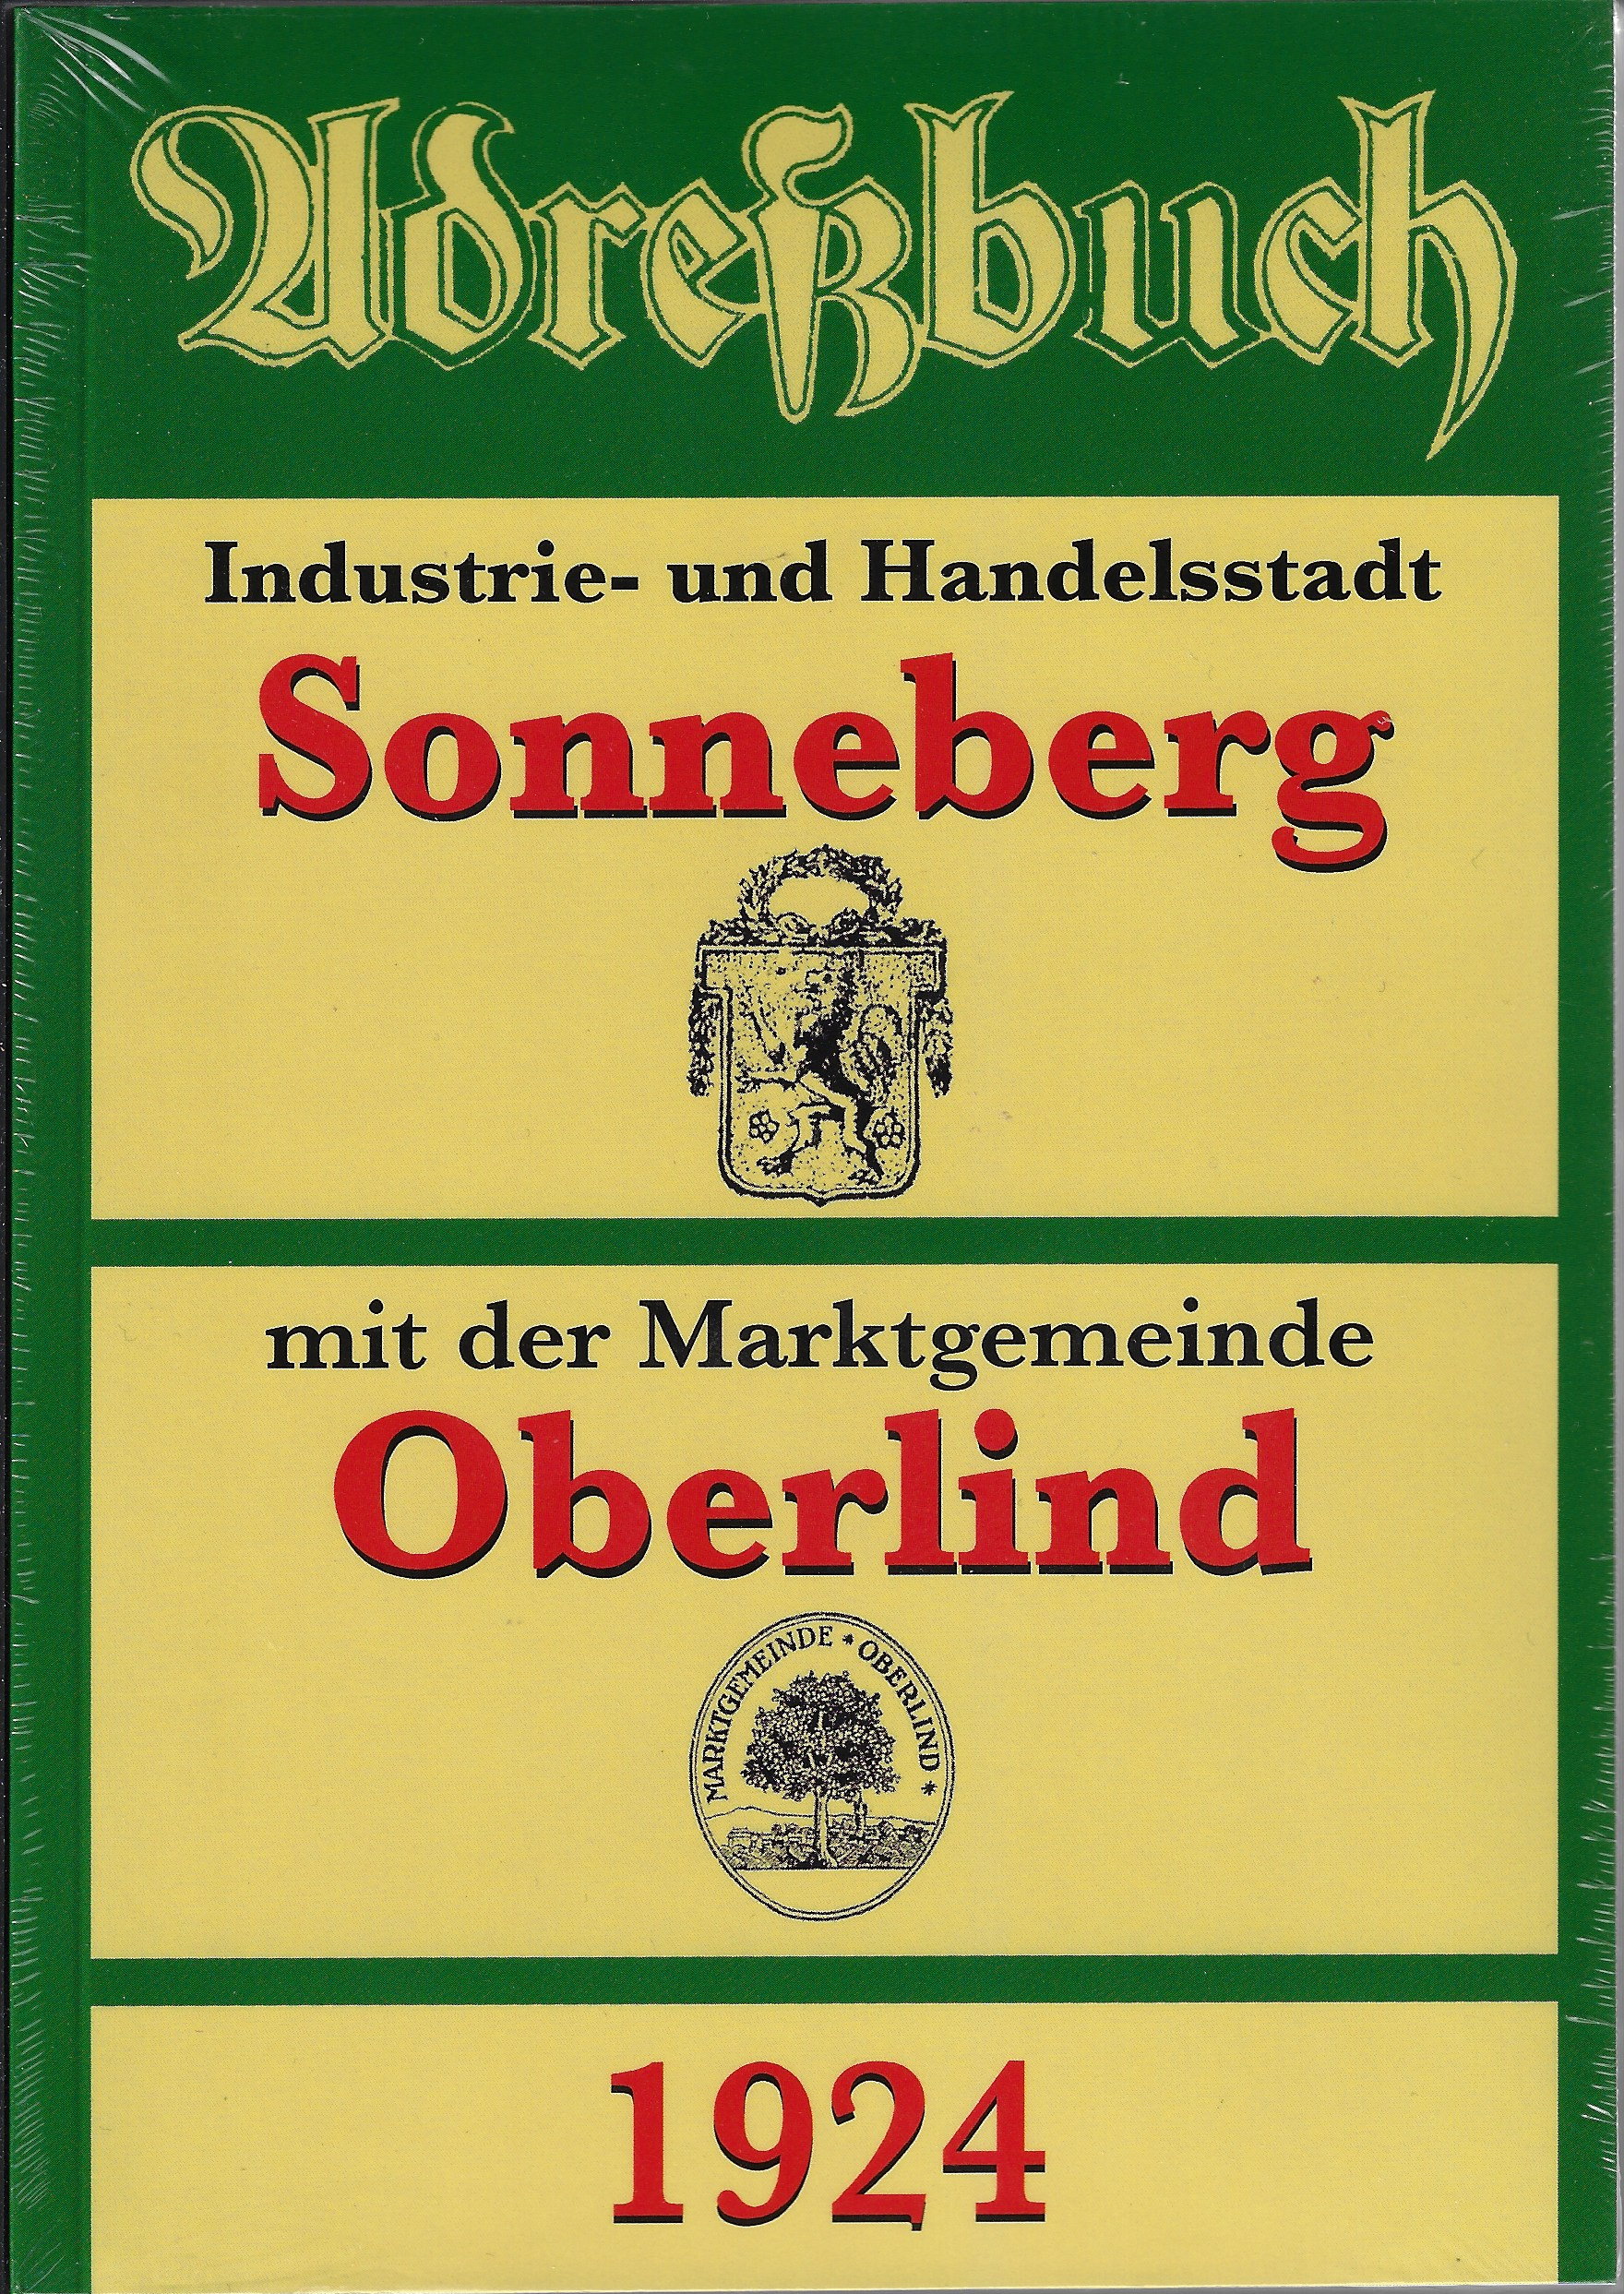 Adreßbuch Sonneberg